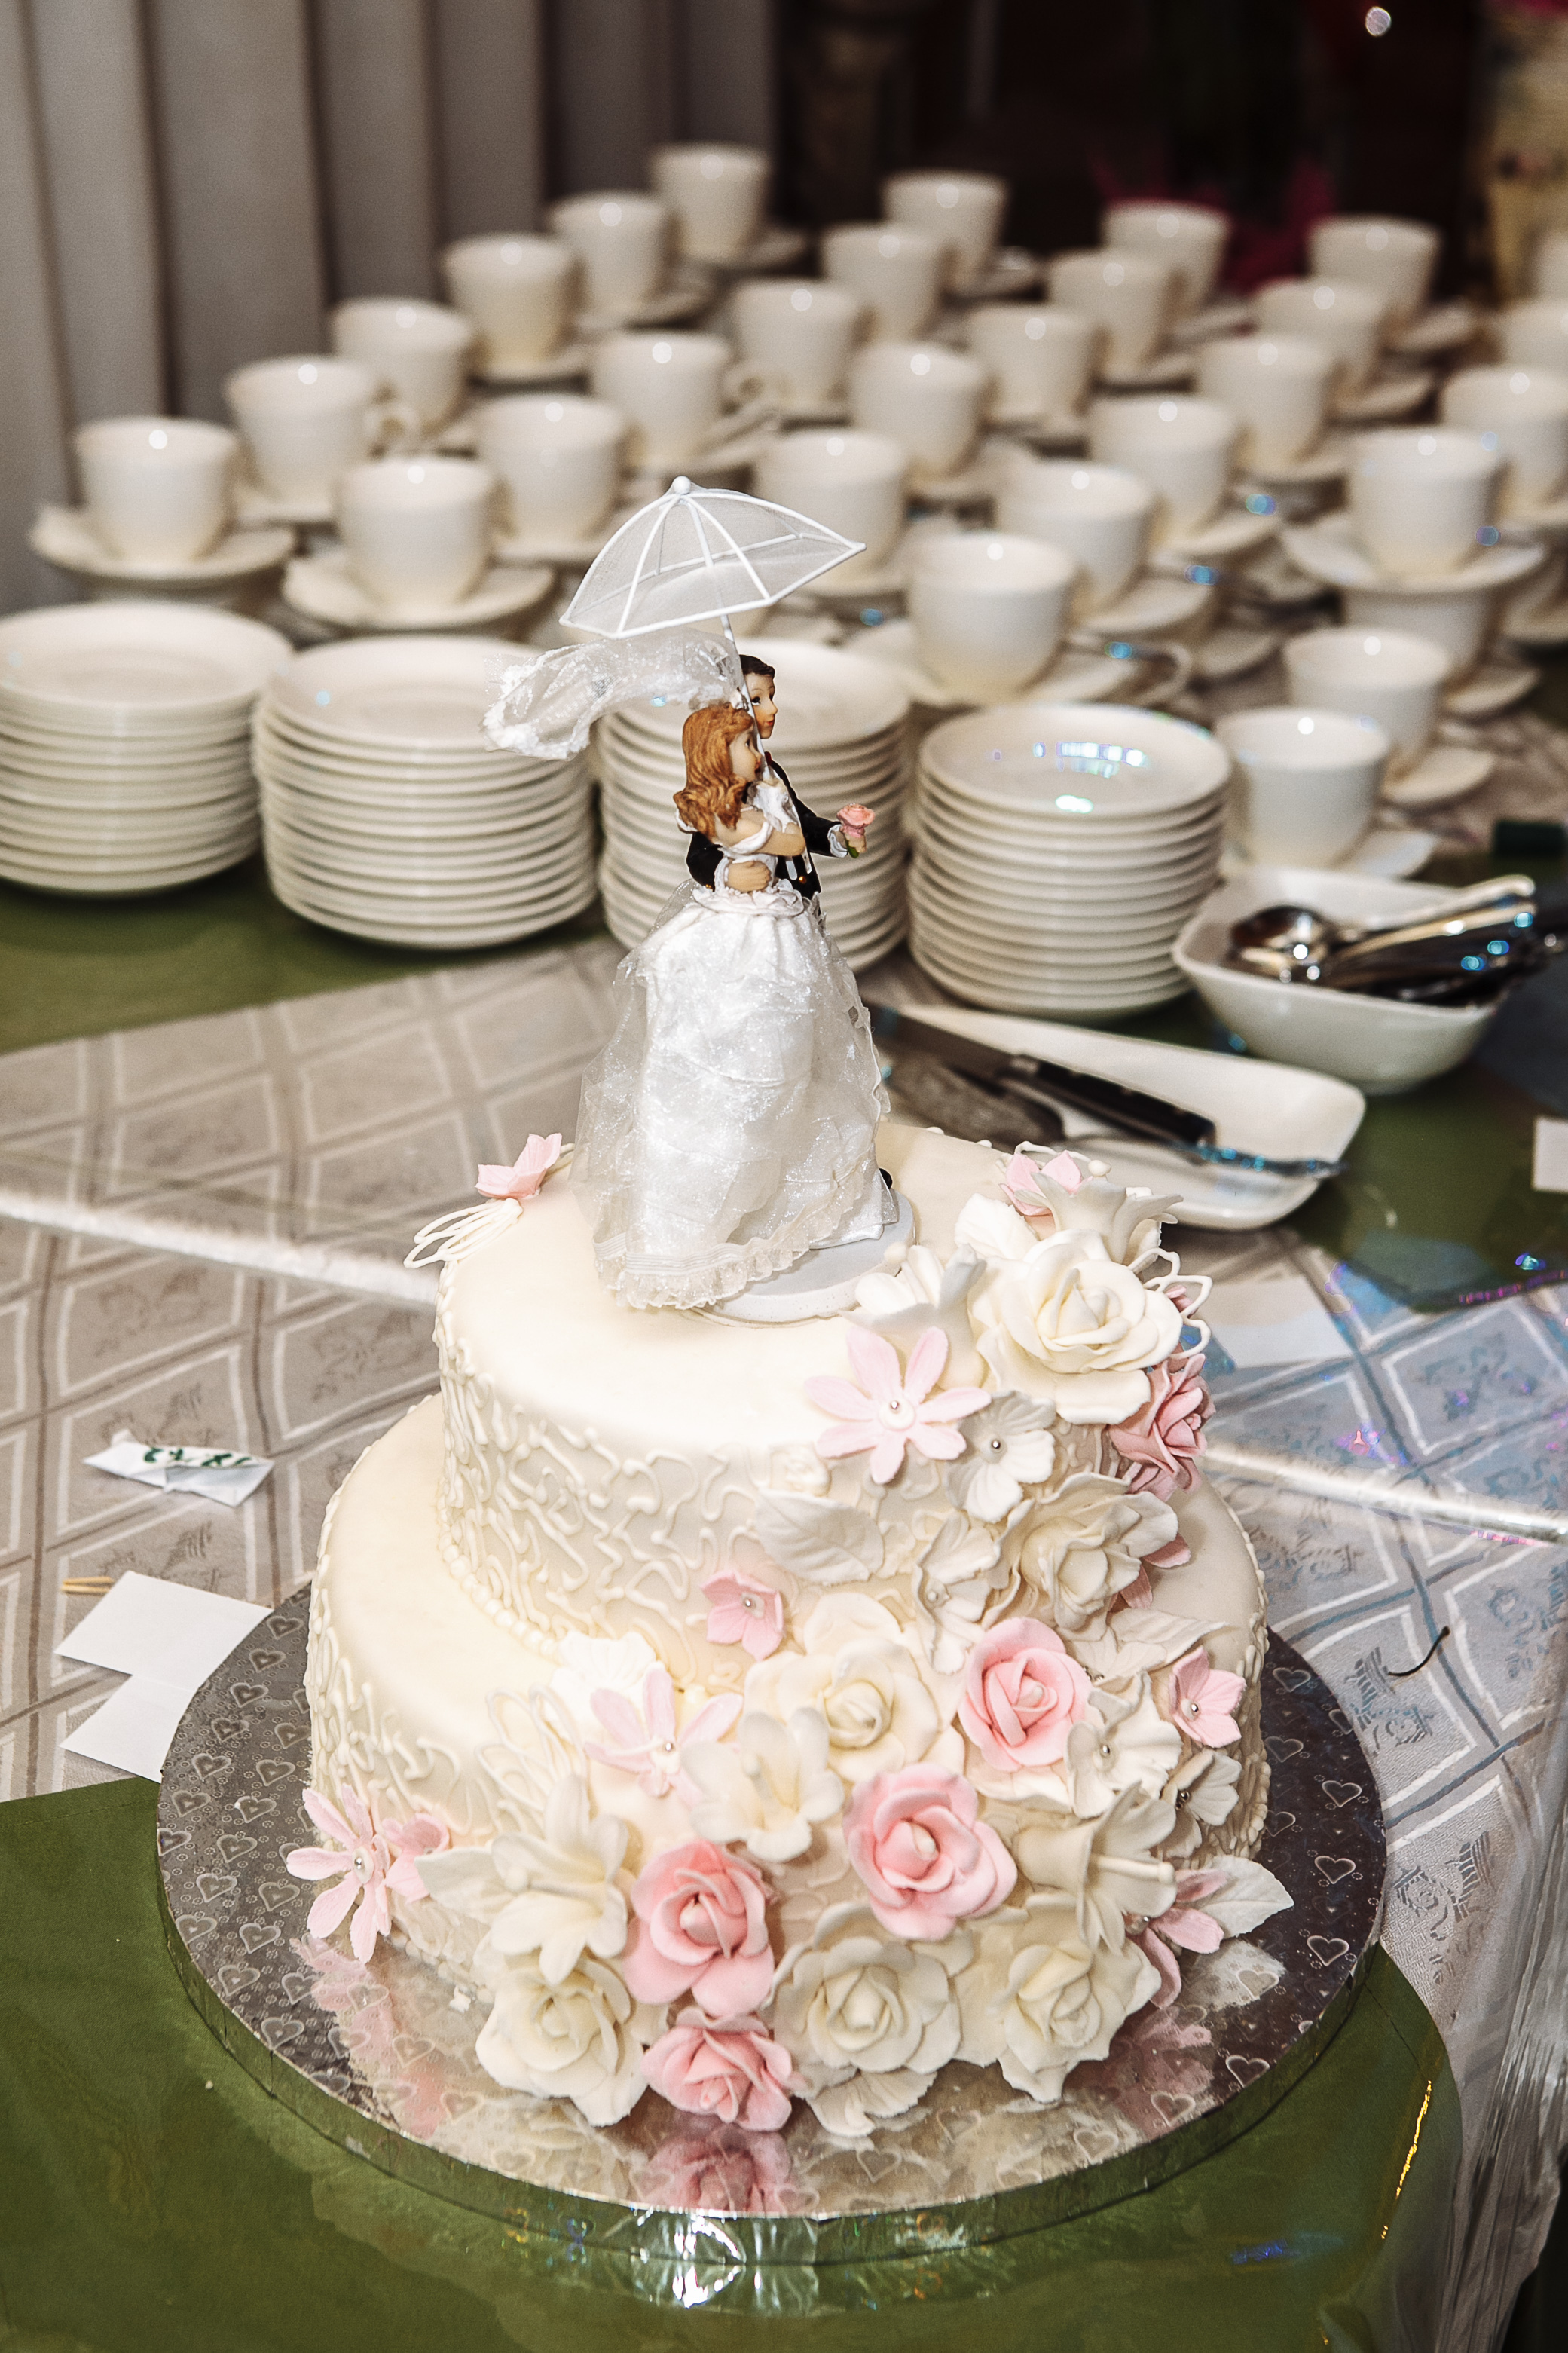 Un gâteau de mariage | Source : Shutterstock